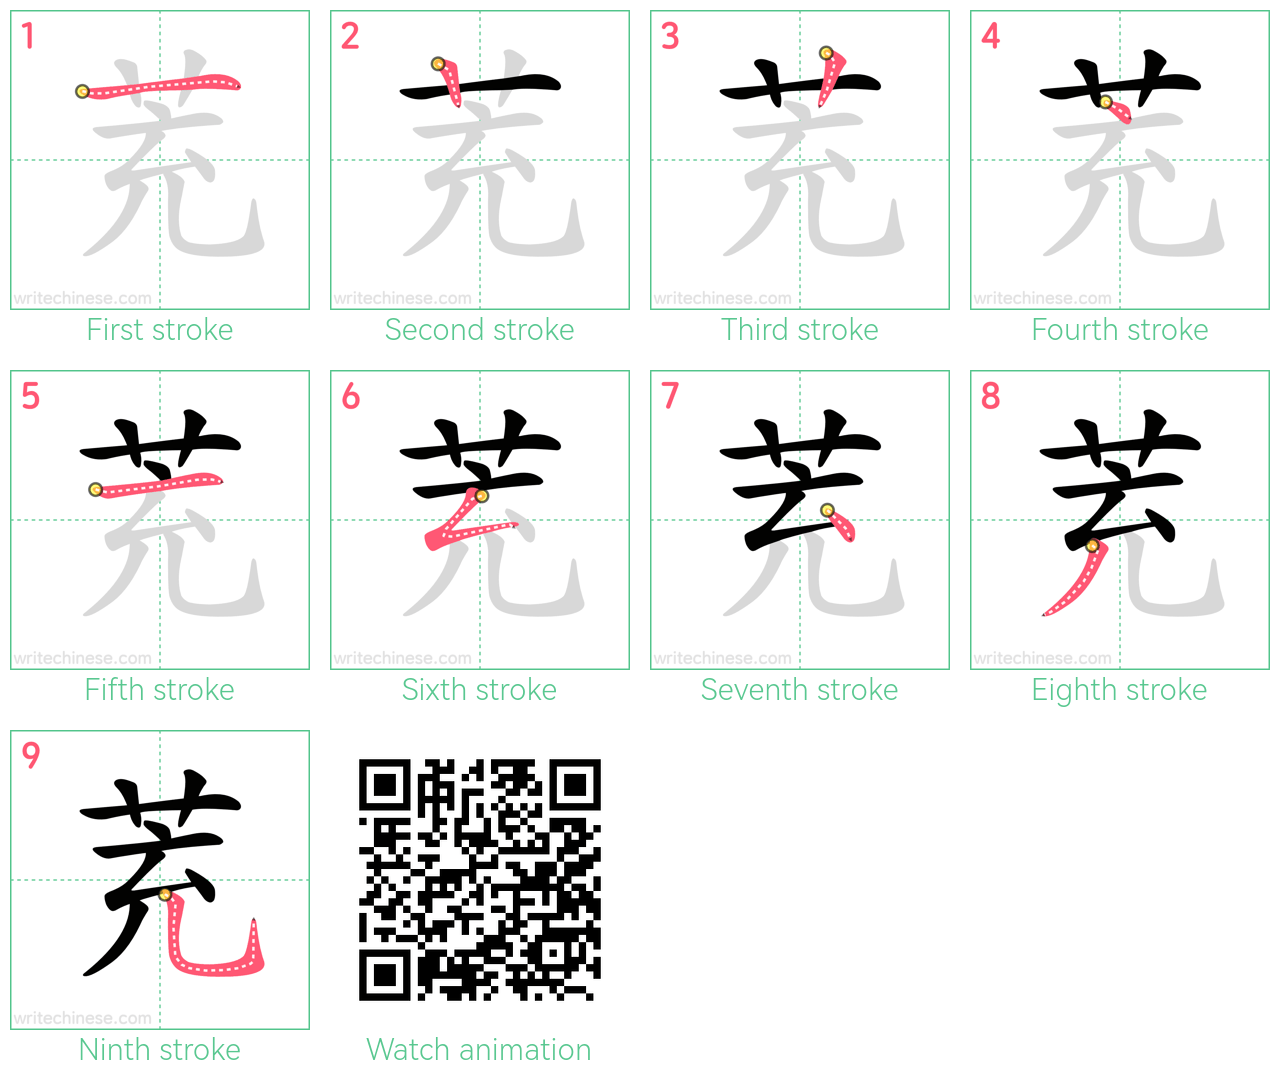 茺 step-by-step stroke order diagrams